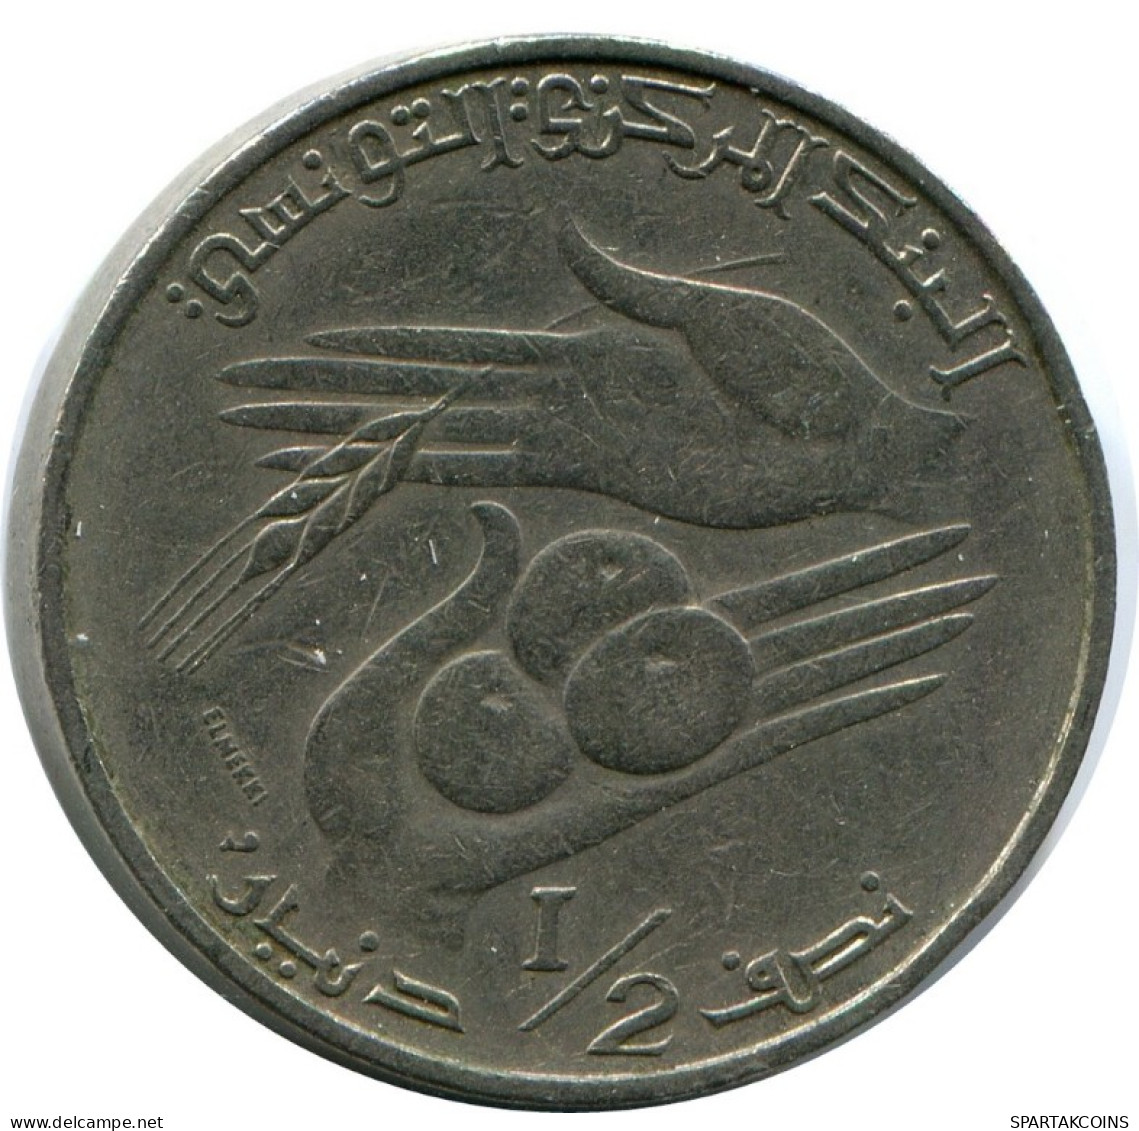 1/2 DINAR 1976 TUNISIA Coin FAO #AK163.U.A - Tunesien